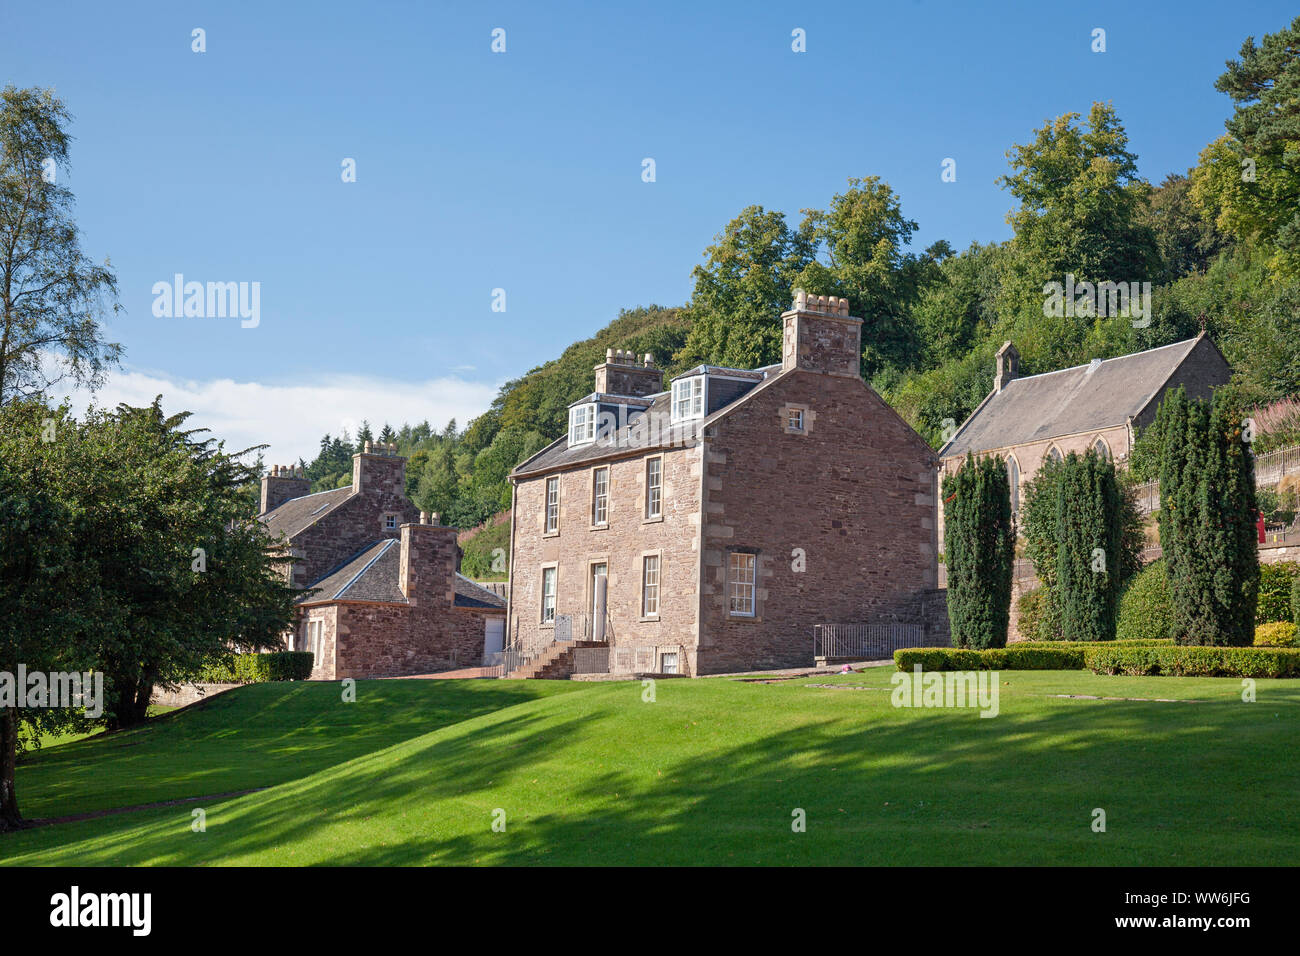 UK, Scotland, Lanarkshire, New Lanark, Owen's House Stock Photo